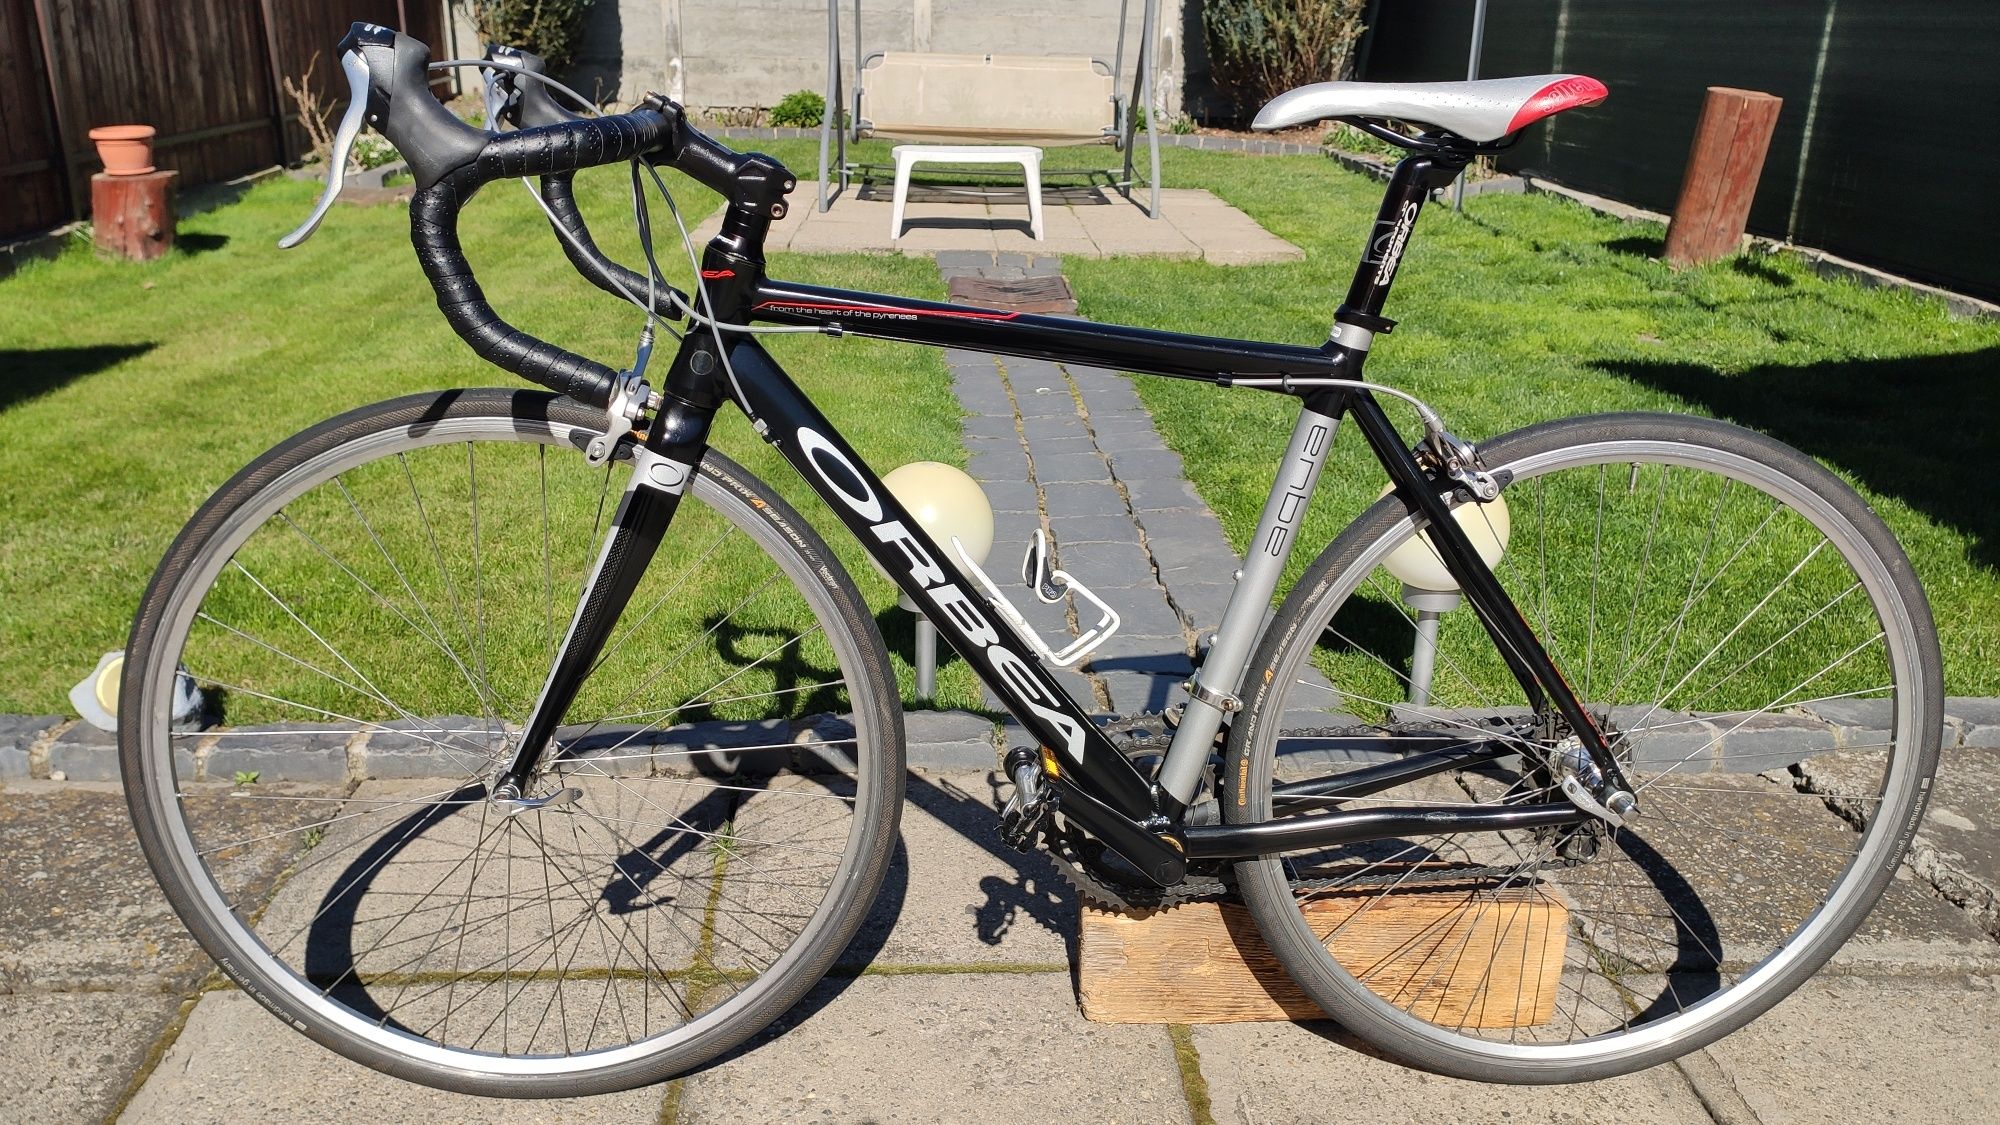 Bicicletă Orbea-furca carbon